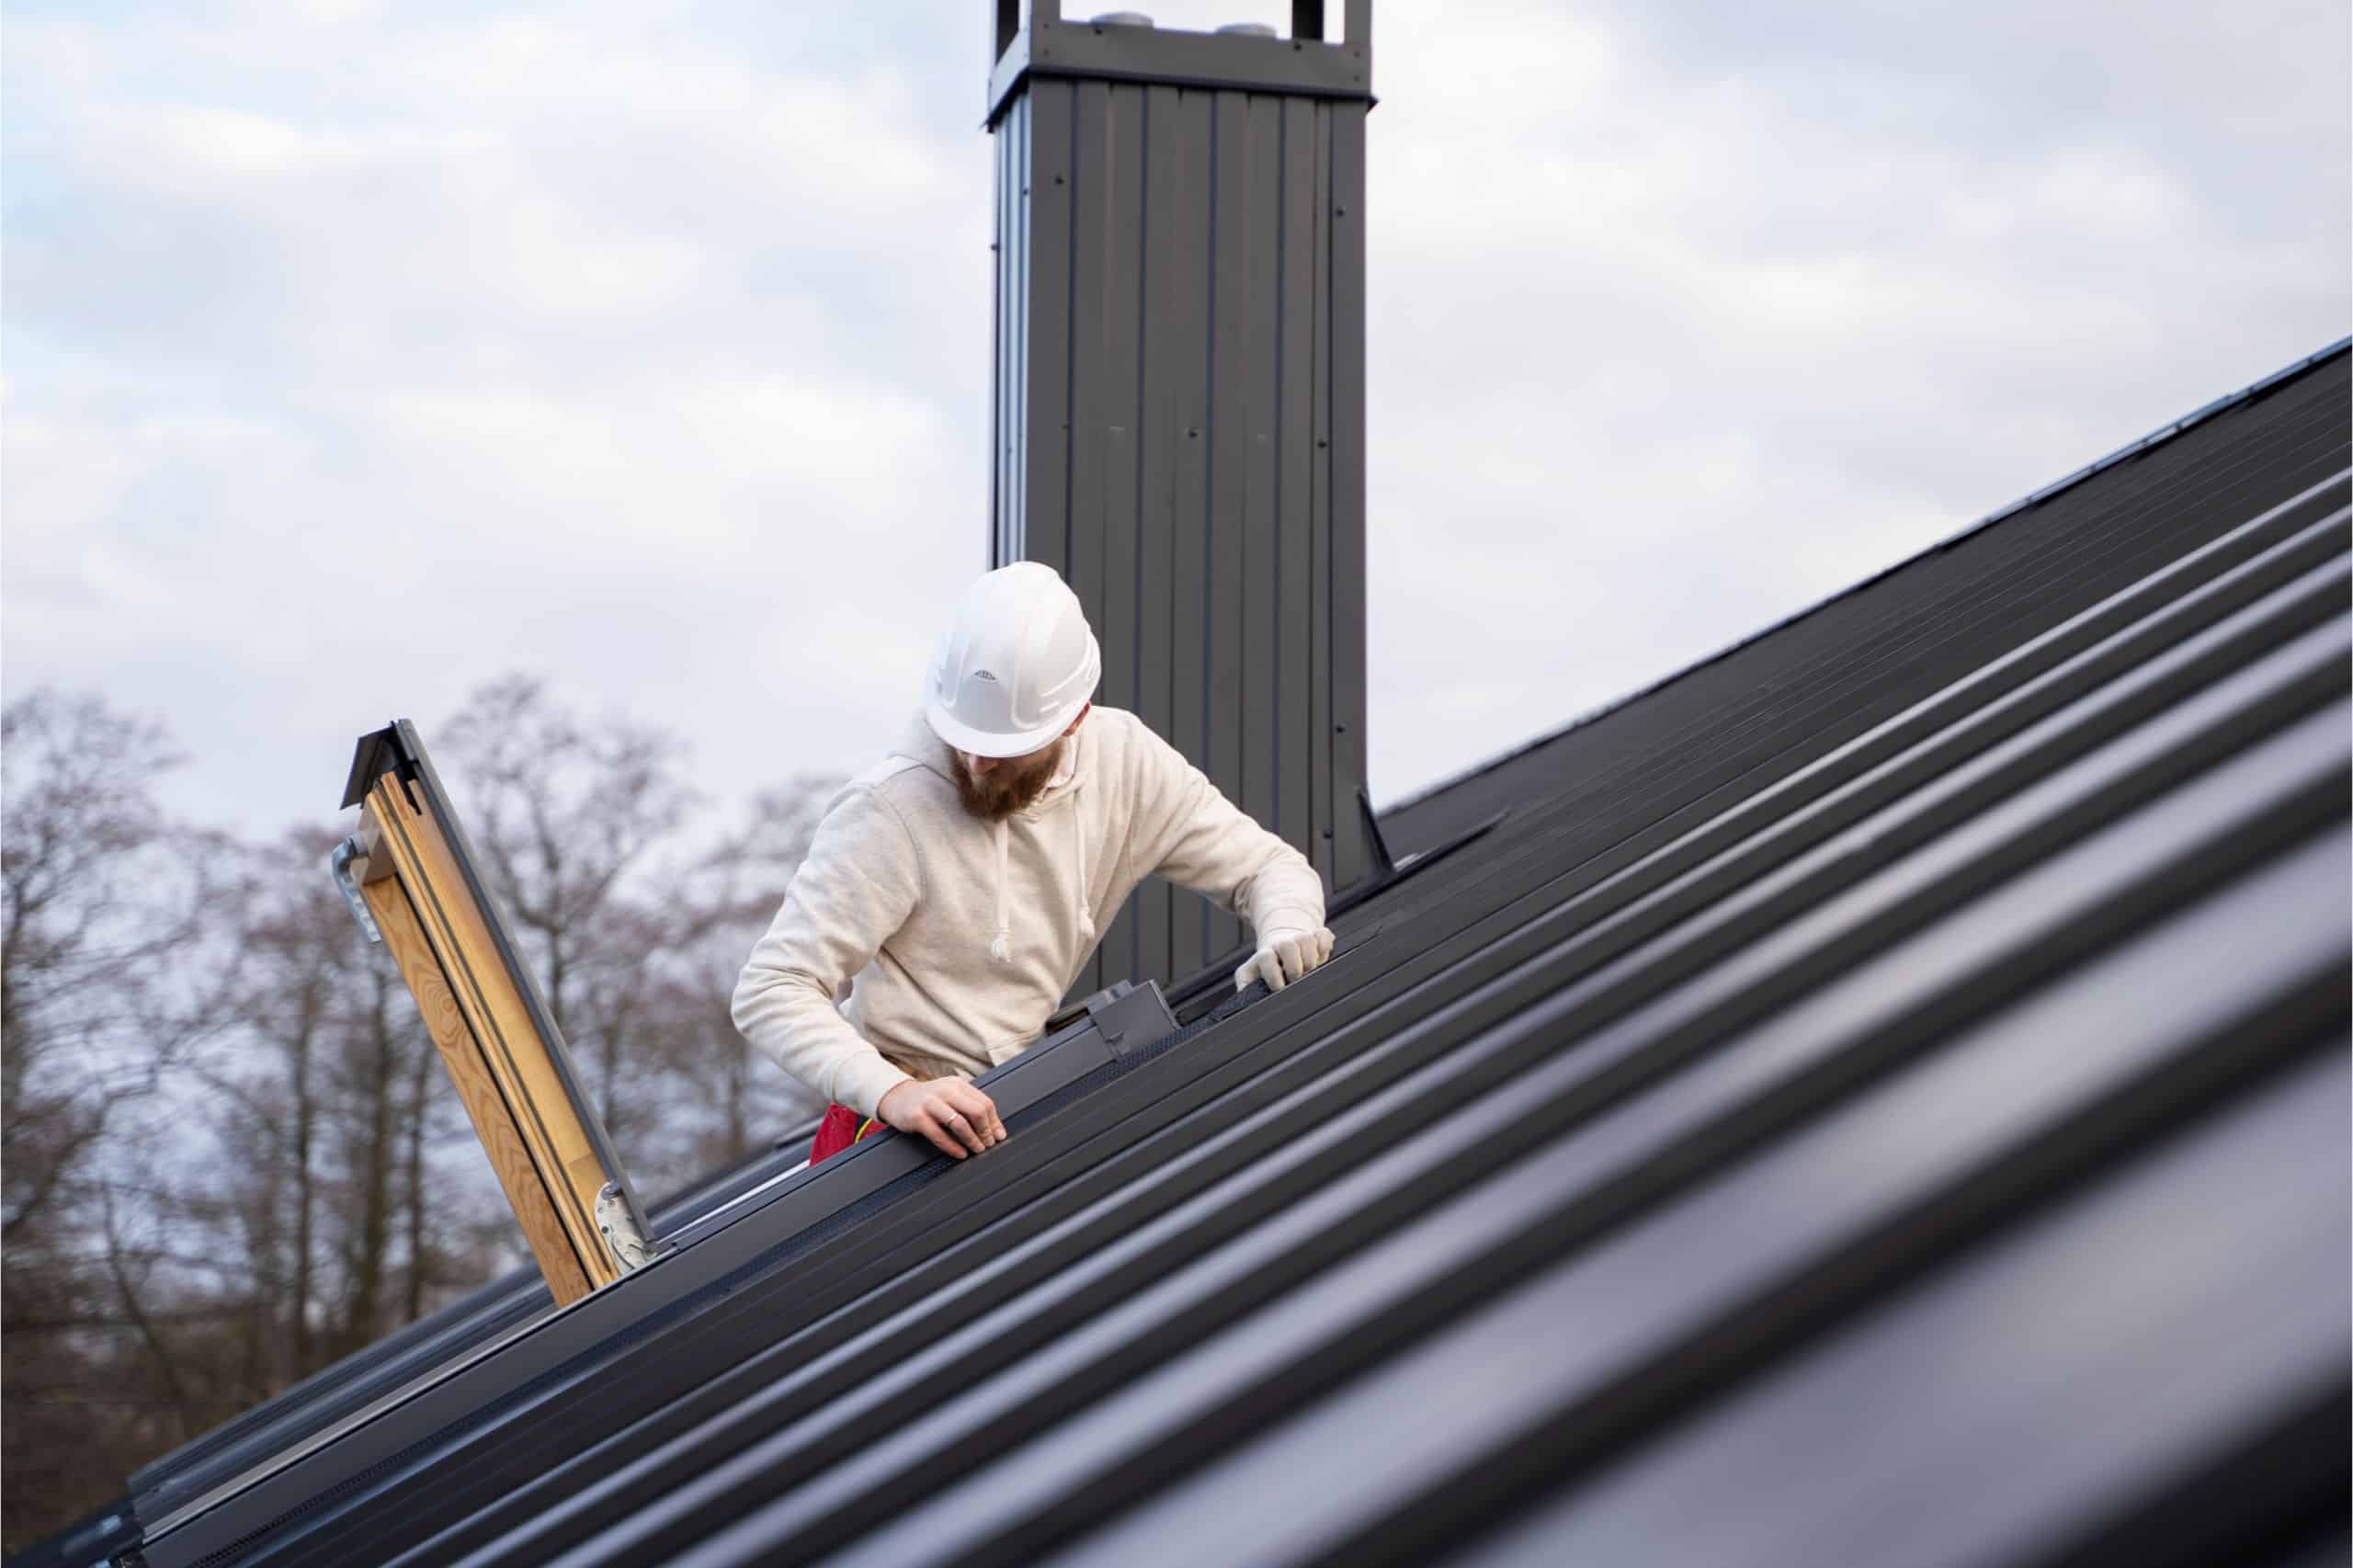 Partenaire couvreur en train de réparer une toiture à Strasbourg